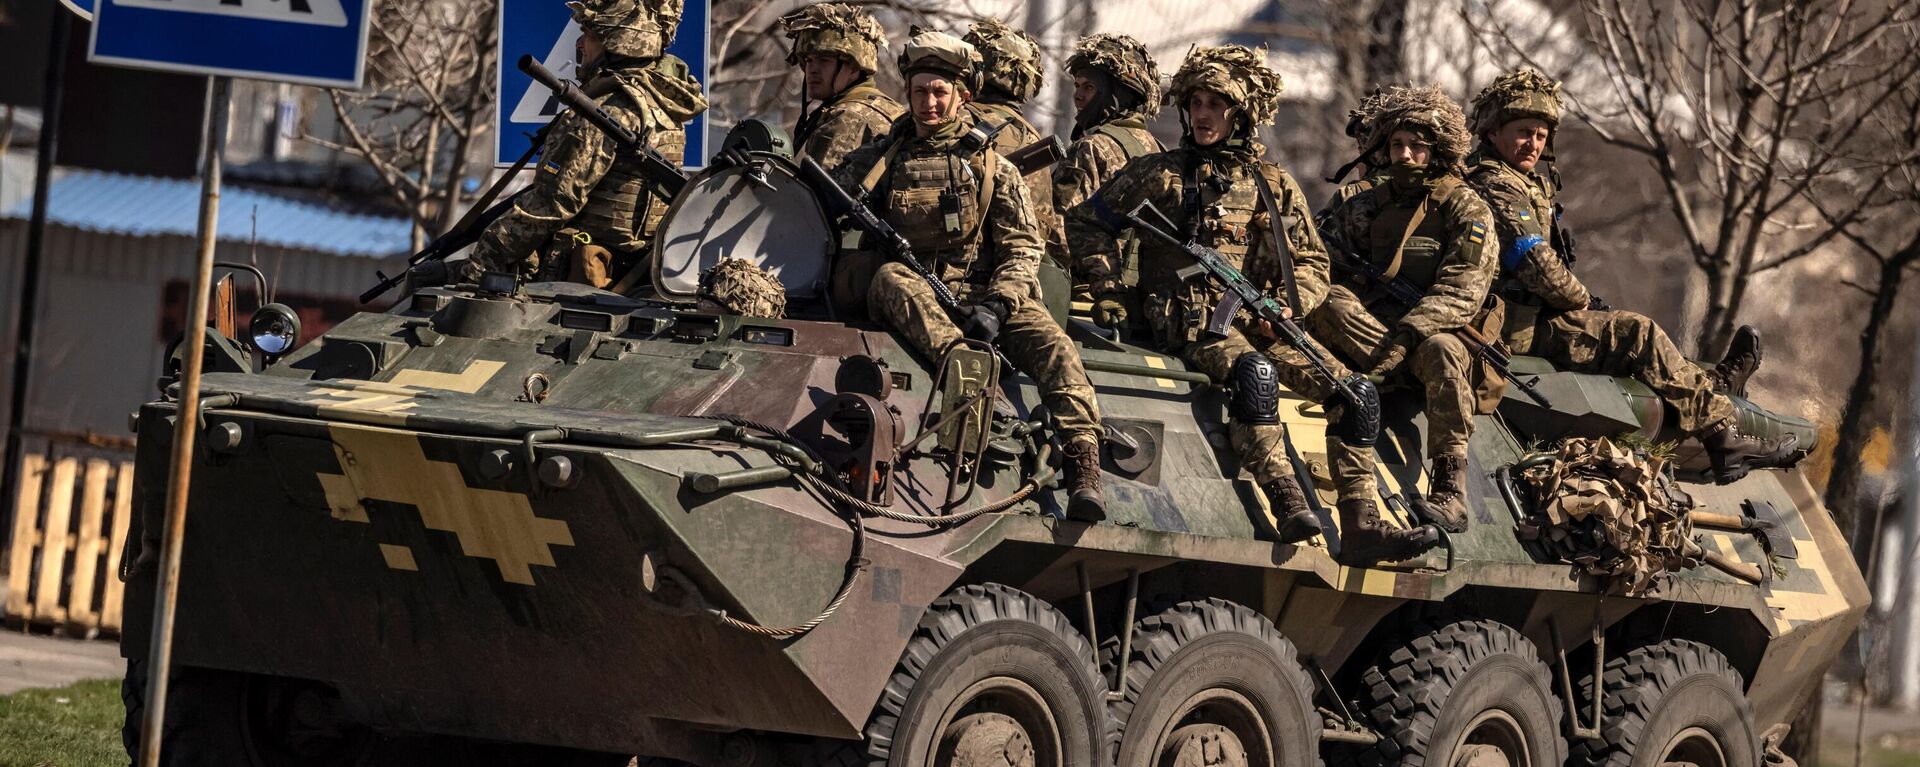 Украинские солдаты сидят в бронетранспортере в городе Северодонецк, Донбасс - Sputnik Azərbaycan, 1920, 06.06.2022